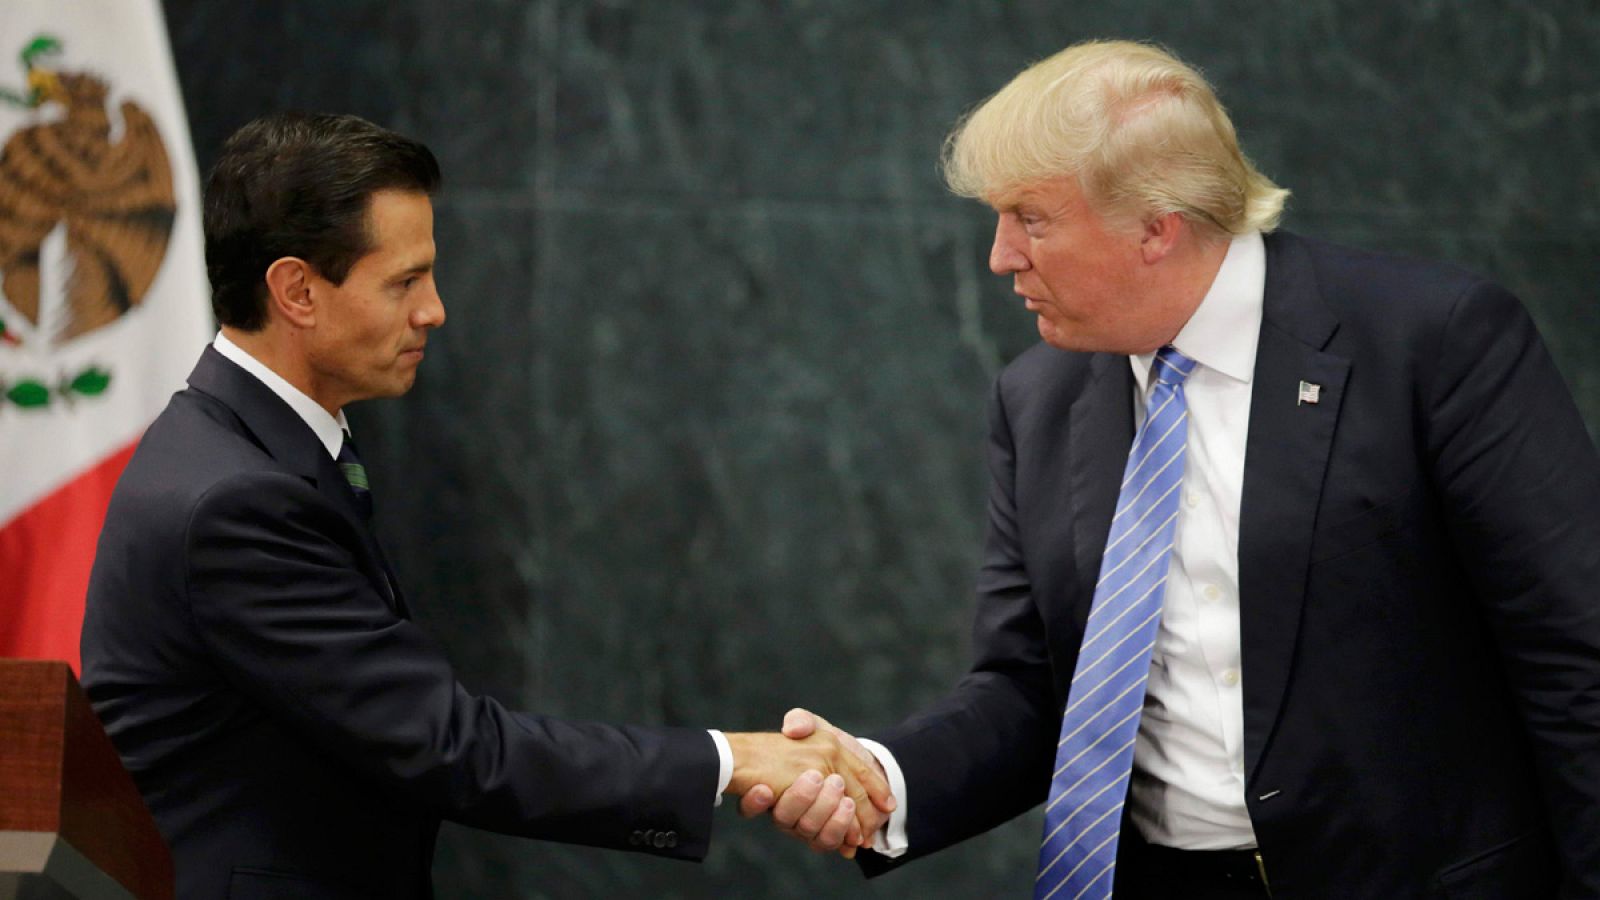 El presidente de México, Enrique Peña Nieto, estrecha la mano del candidato republicano a la Casa Blanca, Donald Trump